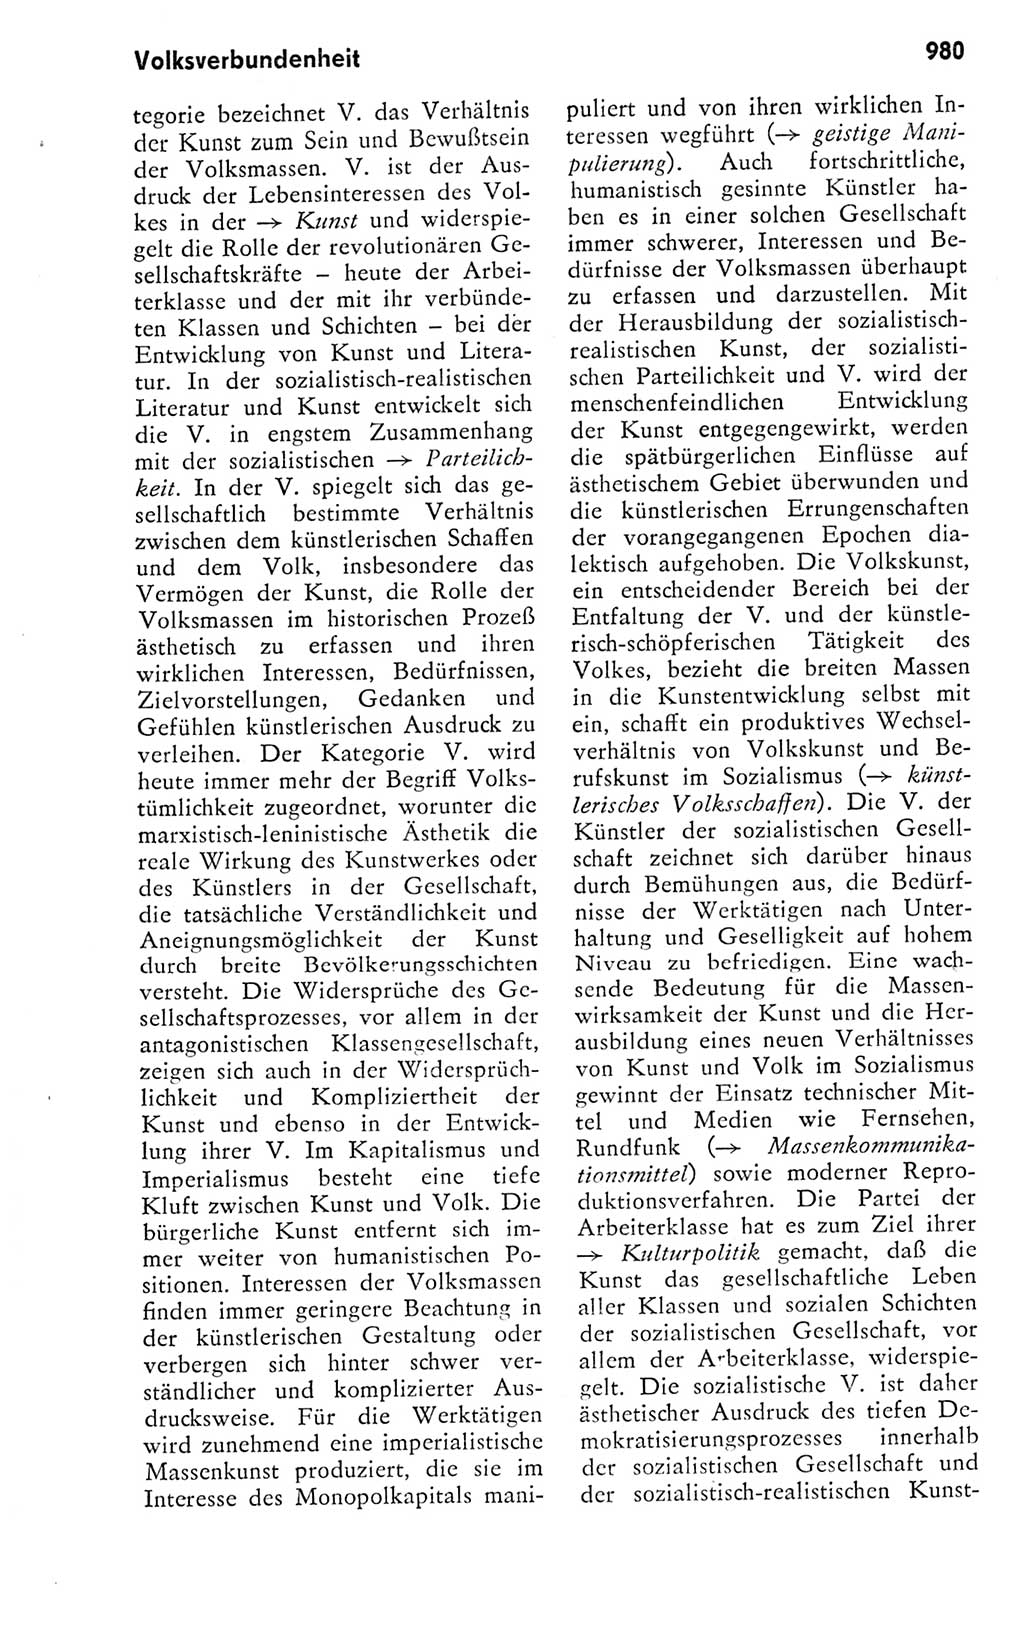 Kleines politisches Wörterbuch [Deutsche Demokratische Republik (DDR)] 1978, Seite 980 (Kl. pol. Wb. DDR 1978, S. 980)